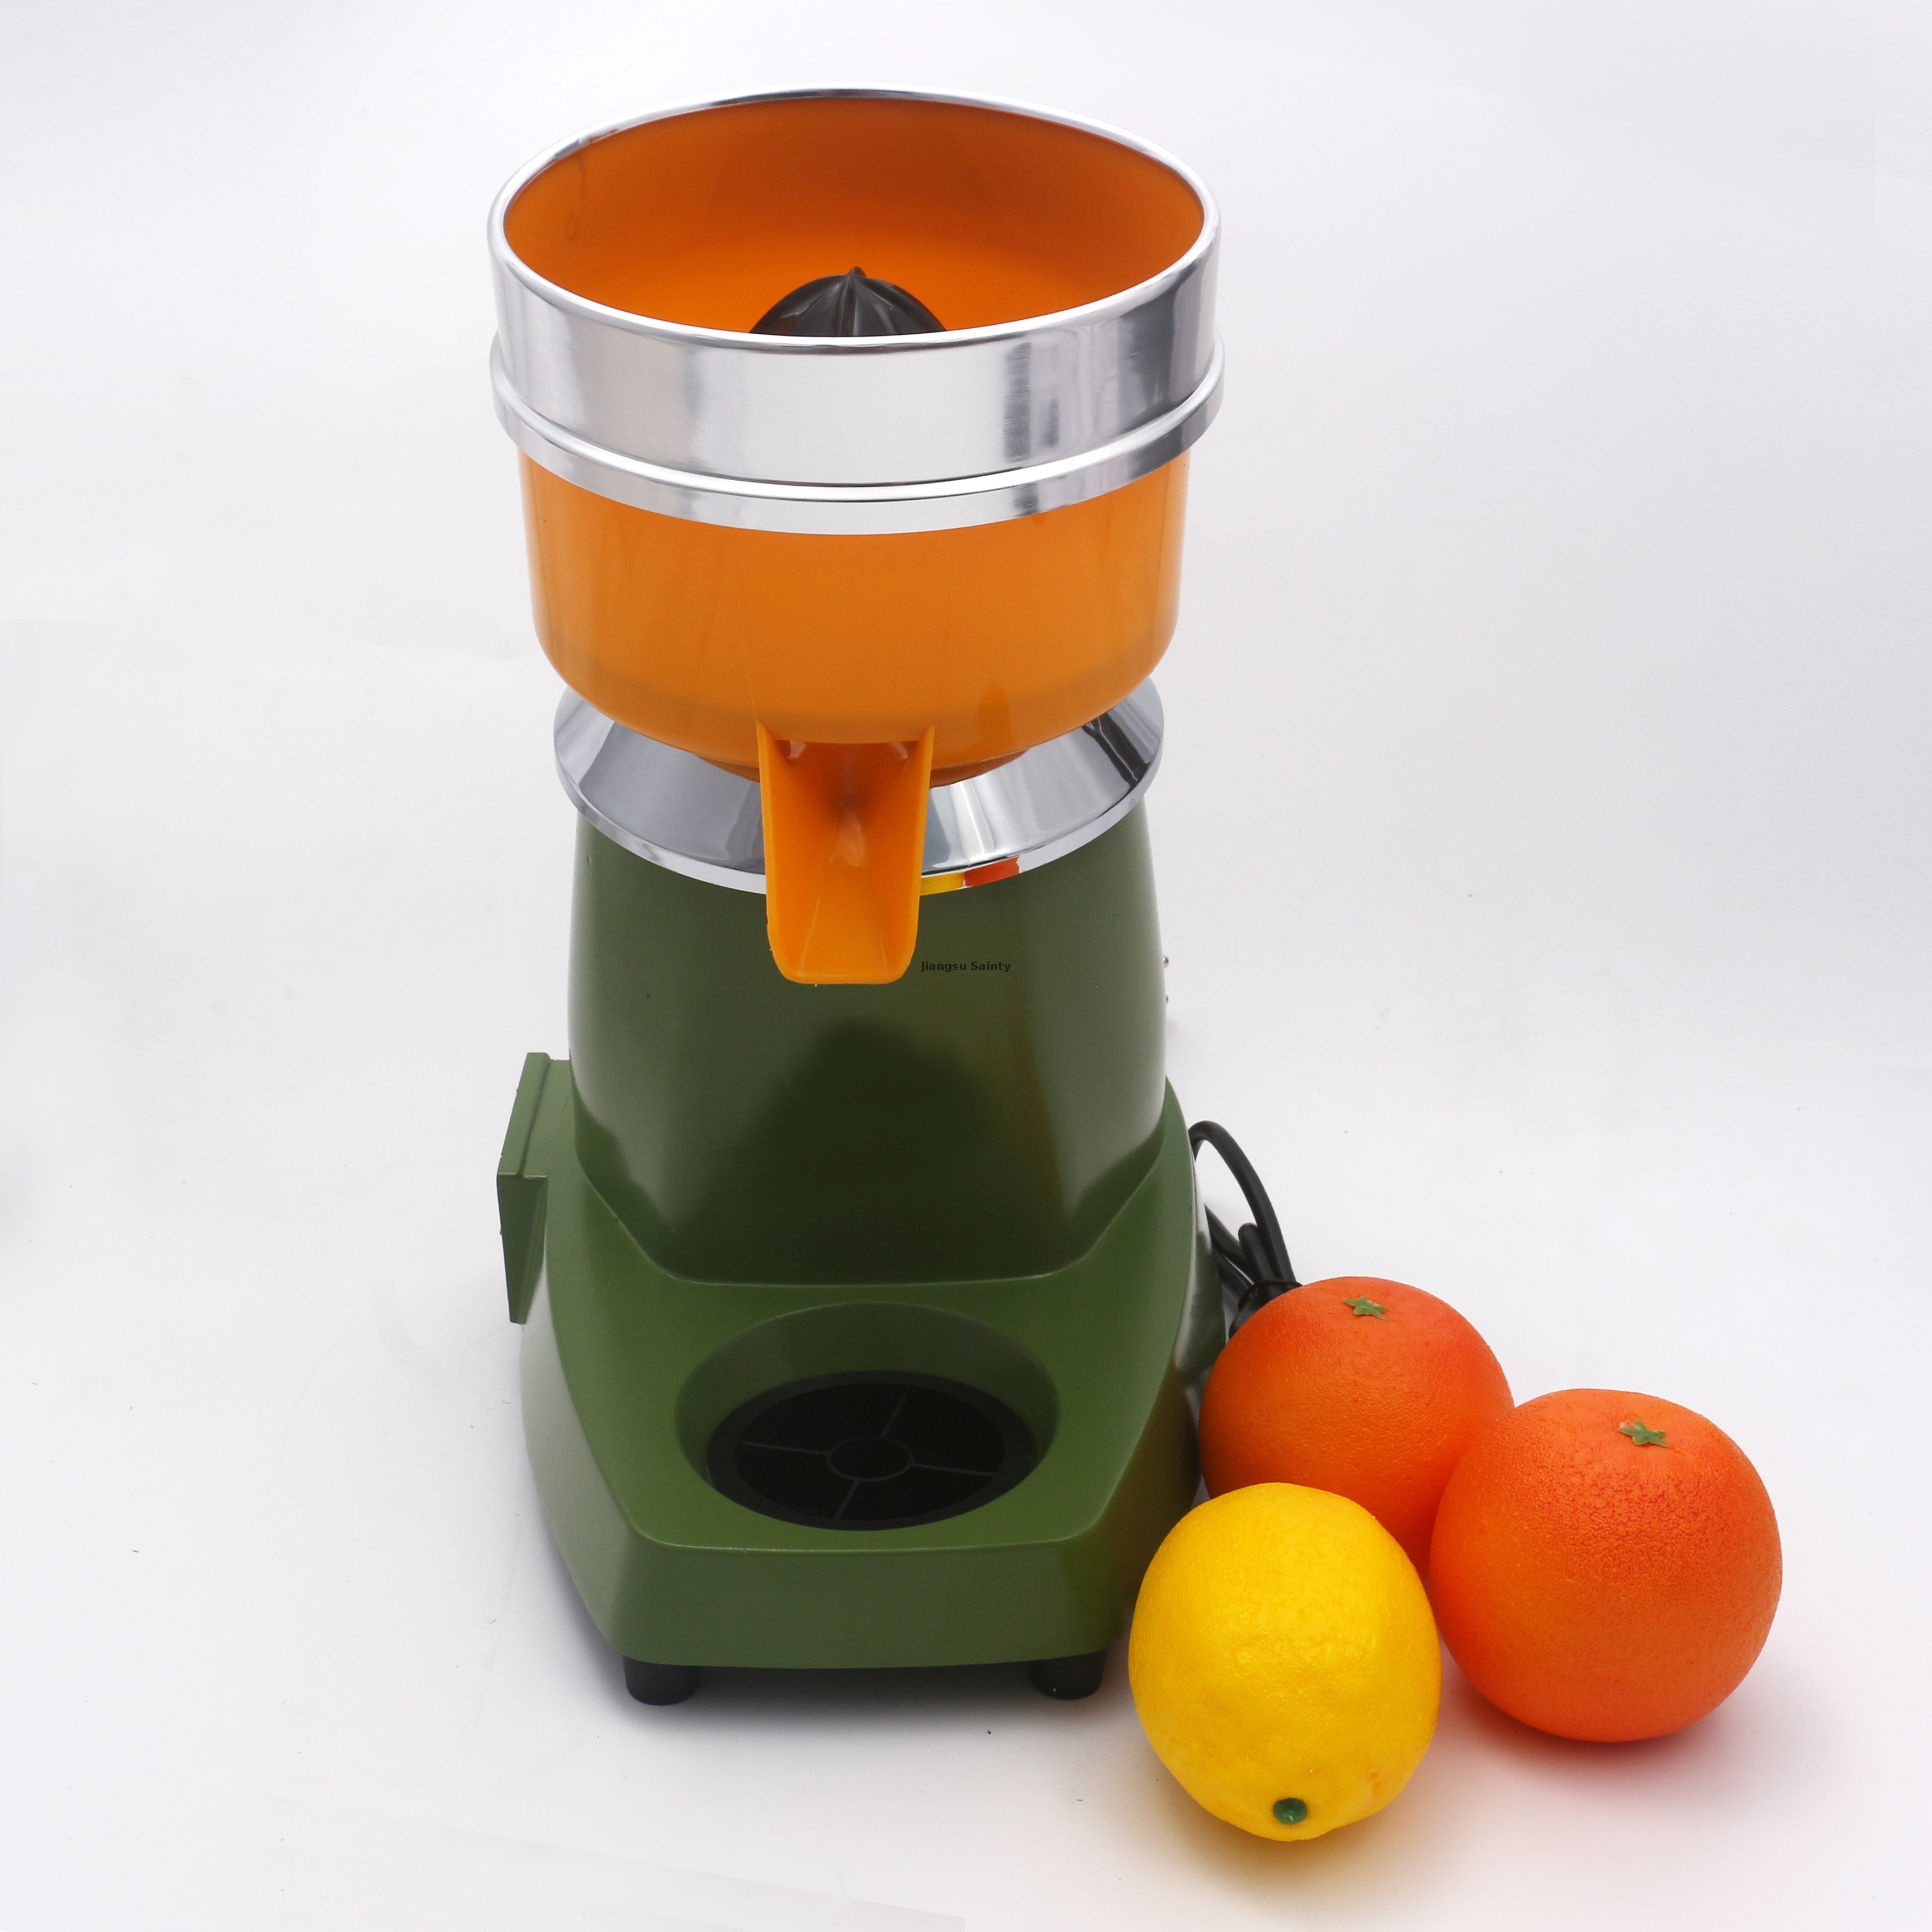 Portable CE Automatic Orange Juicer